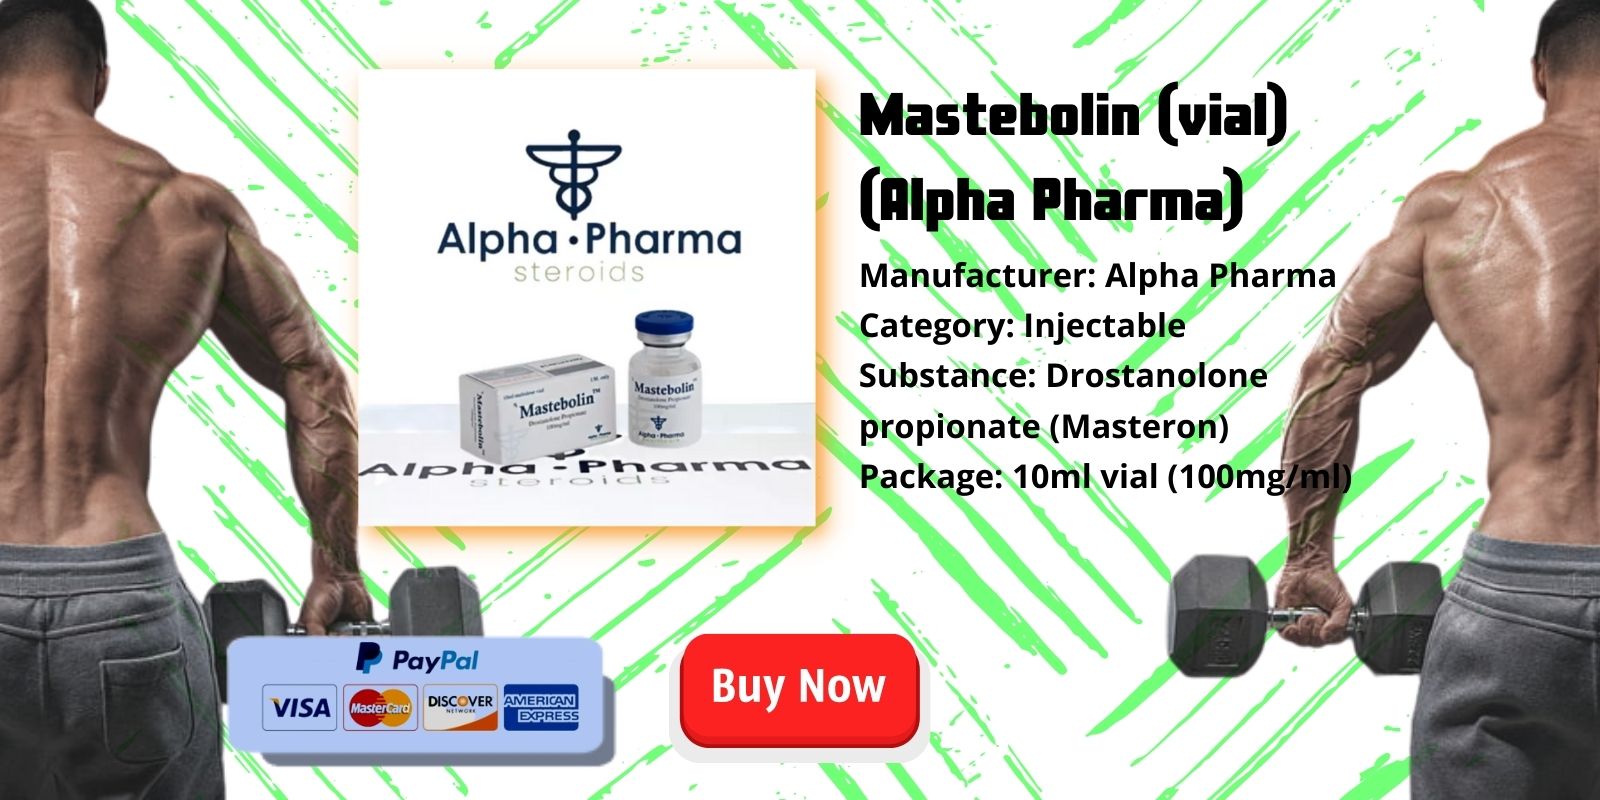 masterbolin (flacon) by Alpha Pharma